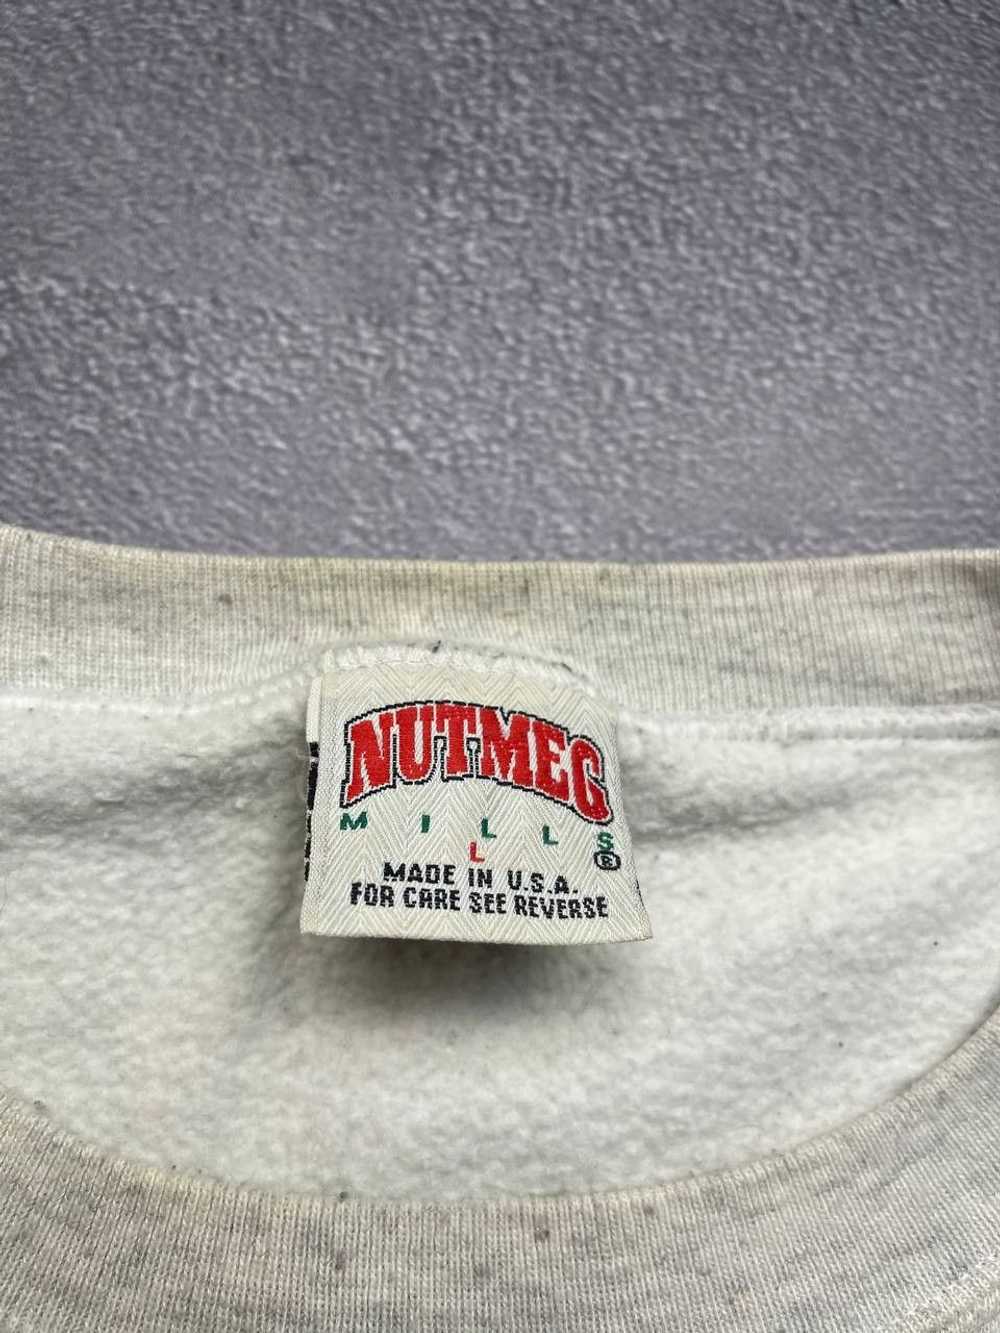 NBA × Nutmeg Mills × Vintage VINTAGE NUTMEG NBA O… - image 3